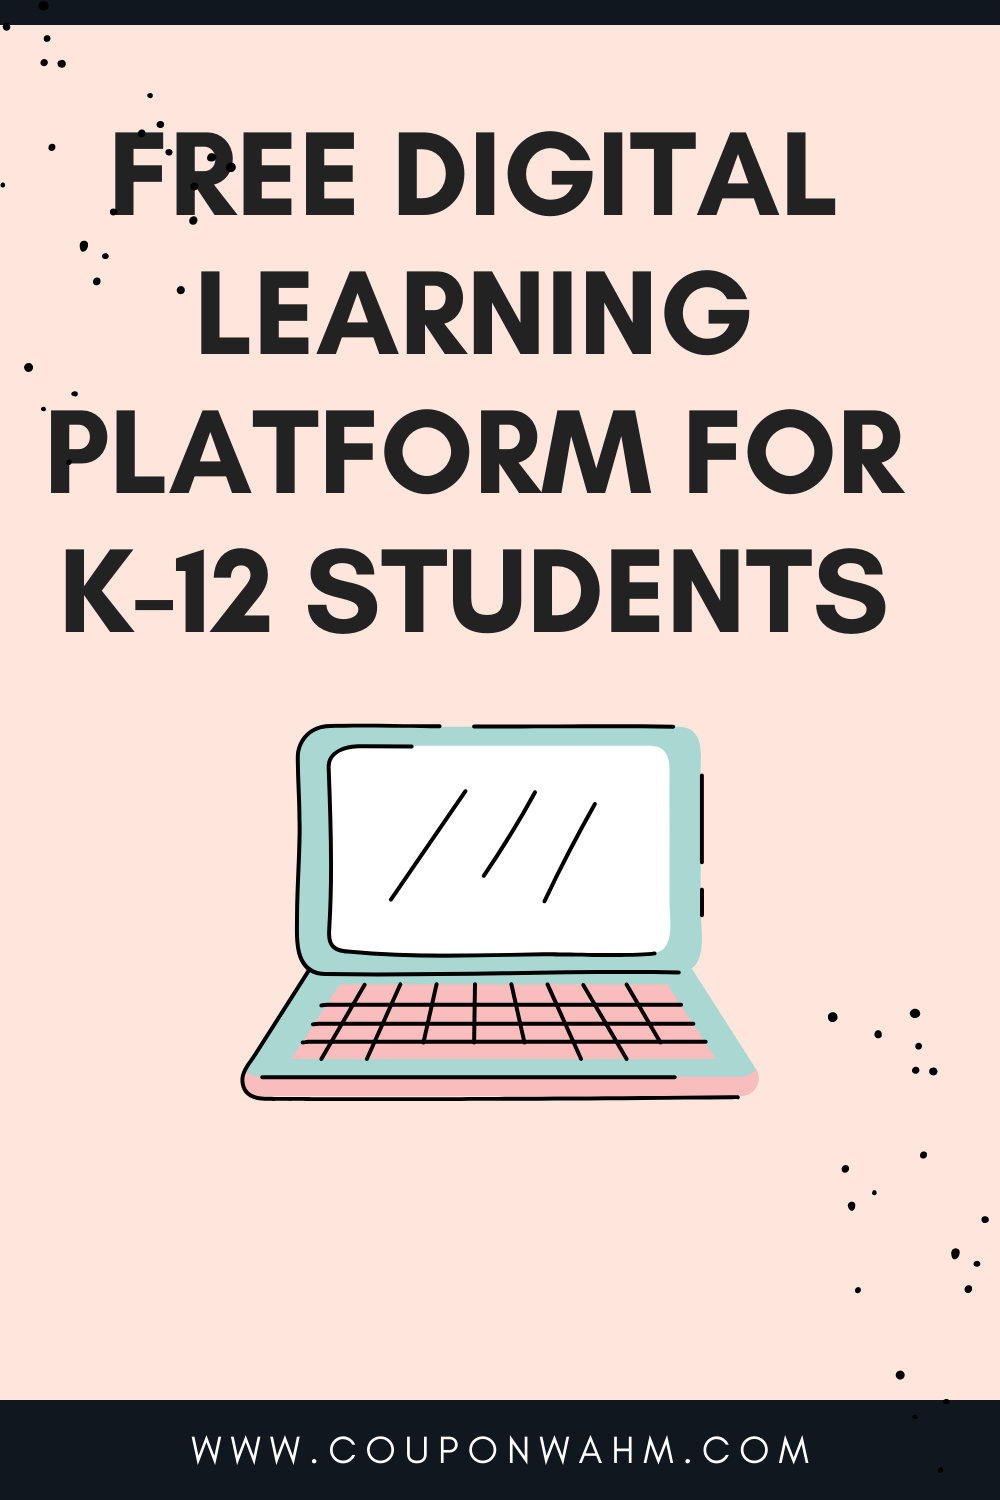 Free digital learning platform for K-12 students